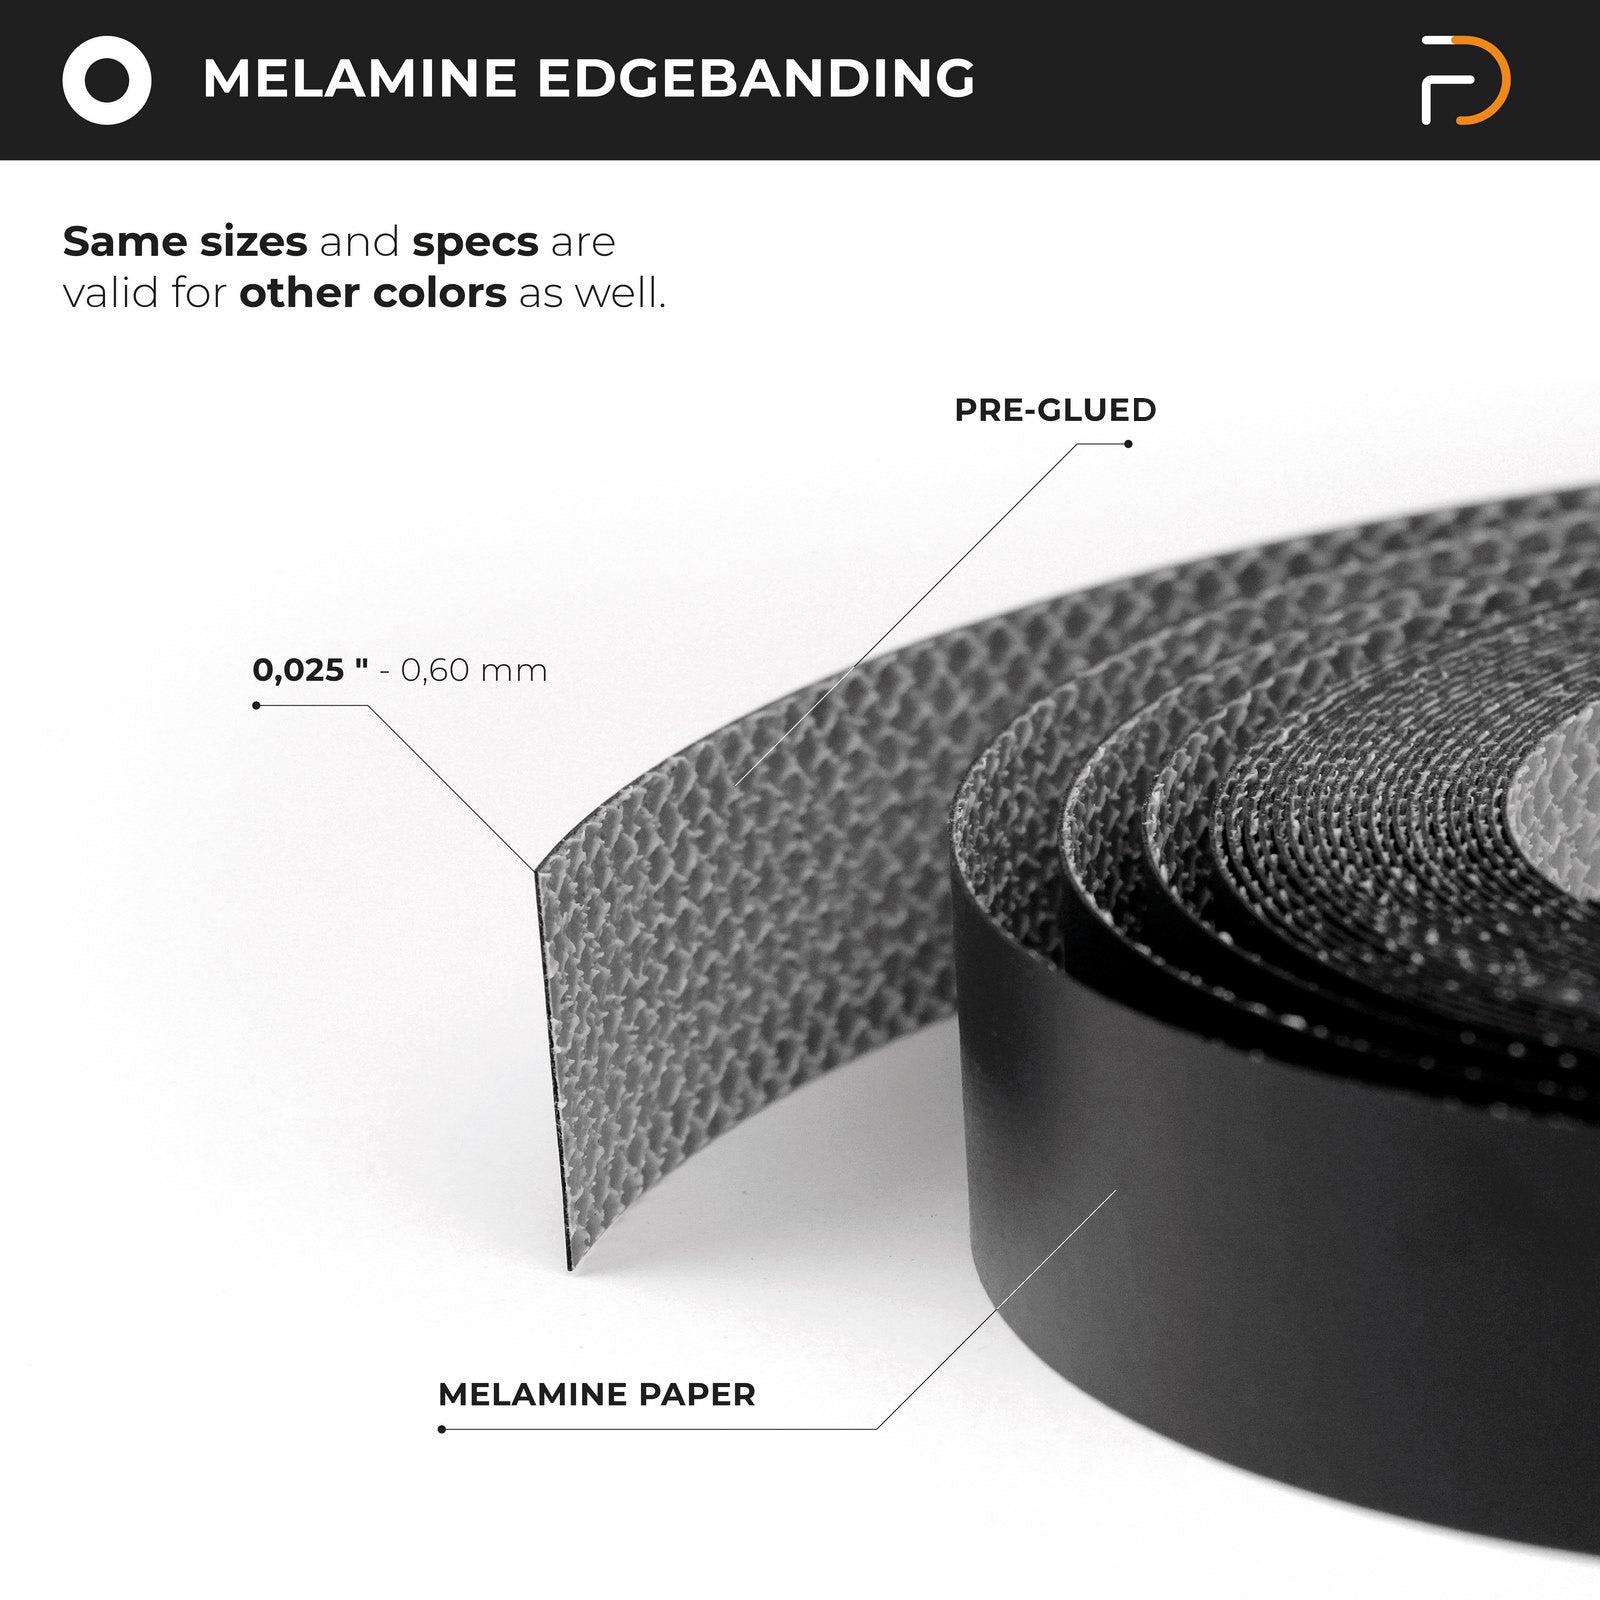 2" x 50' Roll of Pre-Glued Melamine Edgebanding Tape - Melamine Edgebanding Tape - Iron on Edgebanding